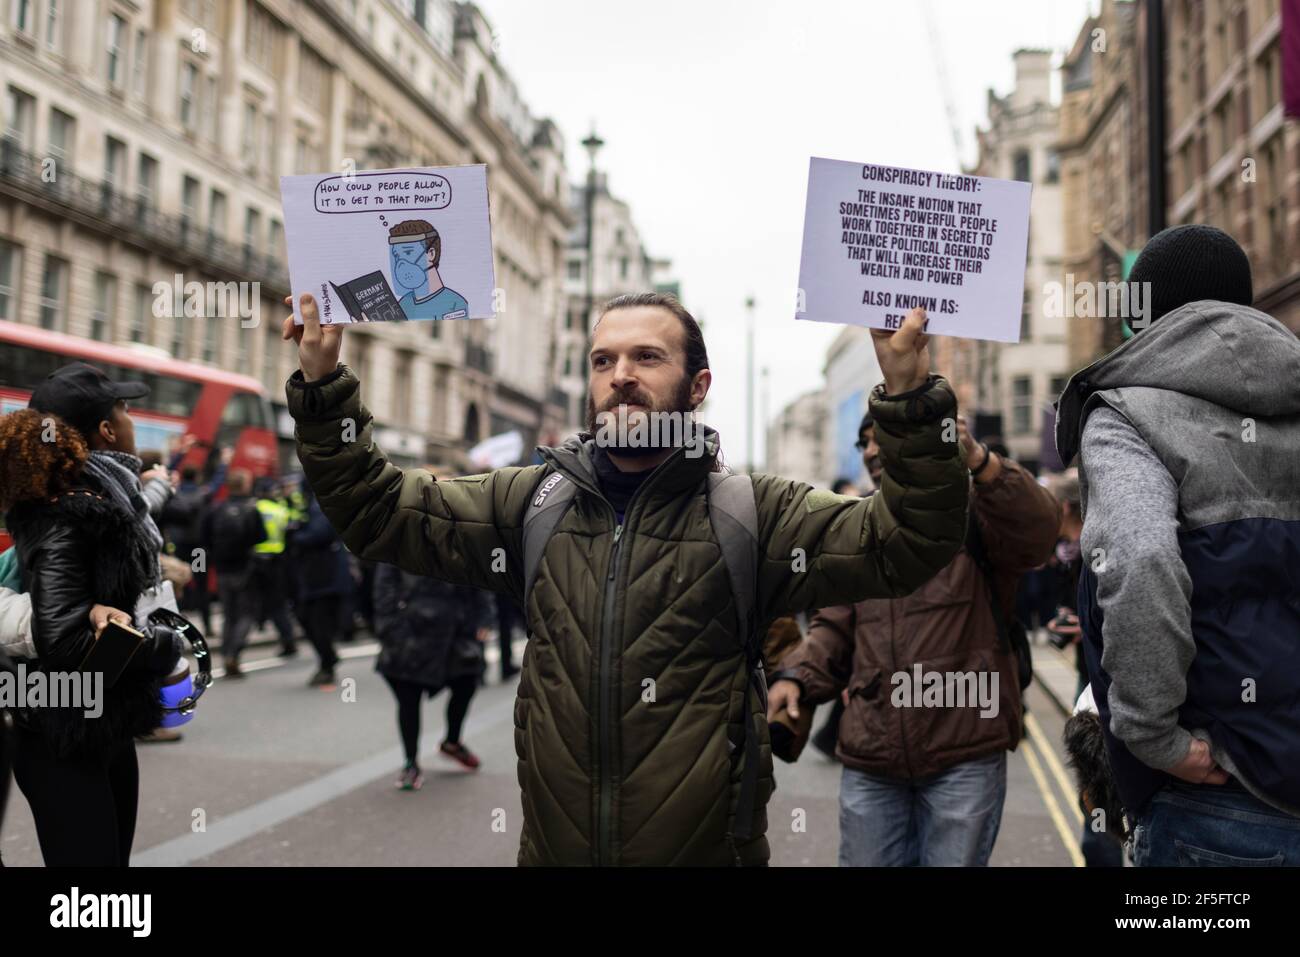 Manifestation contre le confinement et la vaccination contre Covid-19, Londres, 20 mars 2021. Manifestant avec deux plaques. Banque D'Images